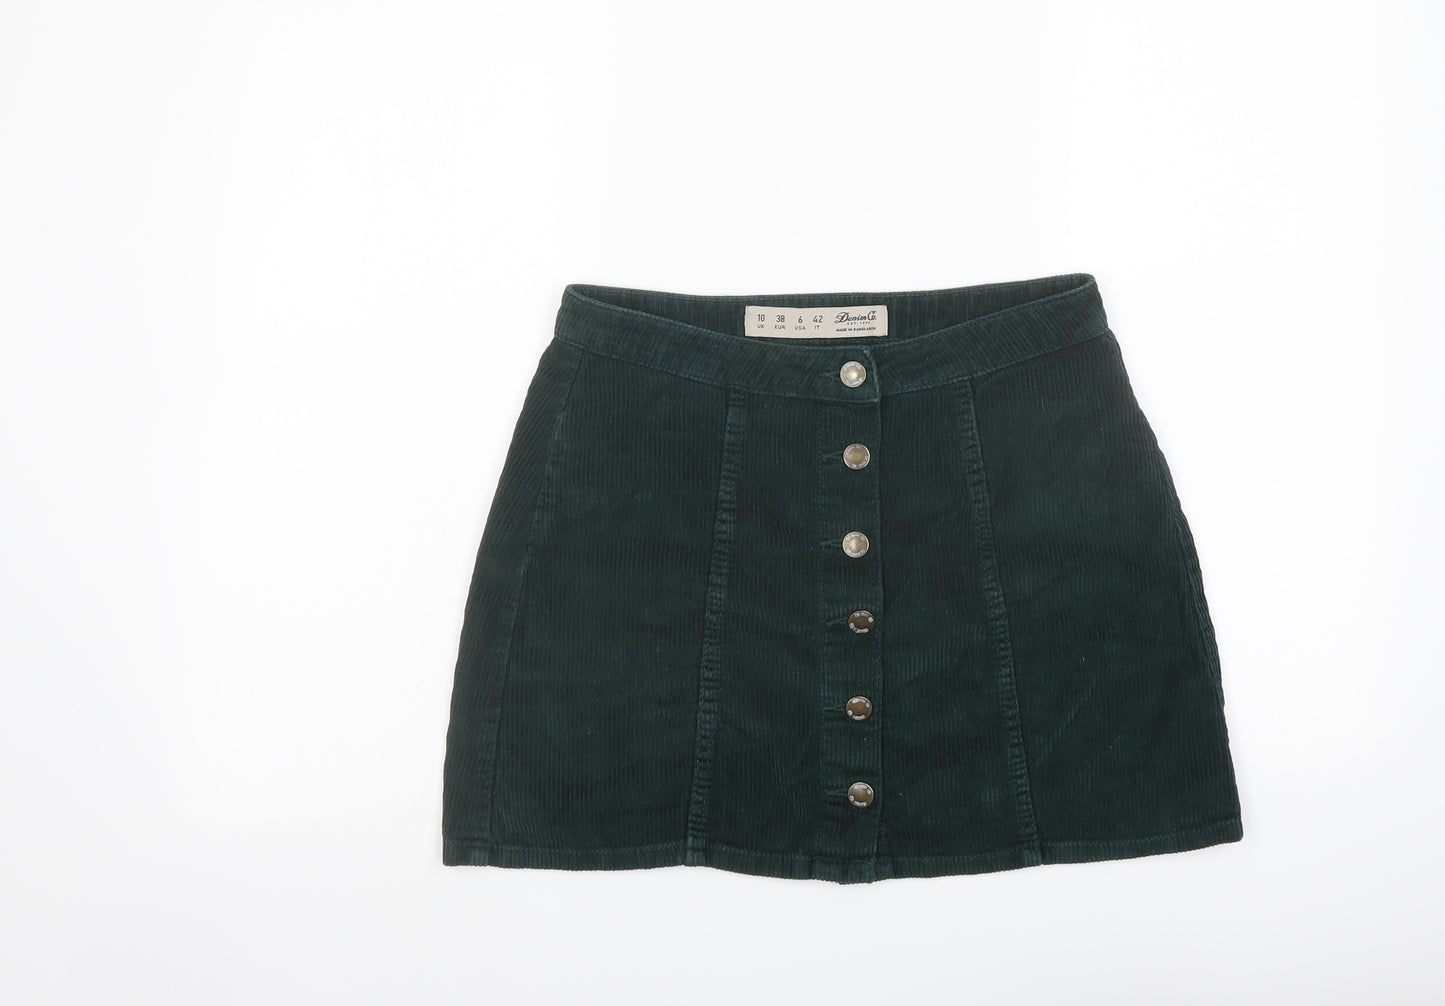 Denim & Co. Womens Green Cotton A-Line Skirt Size 10 Button